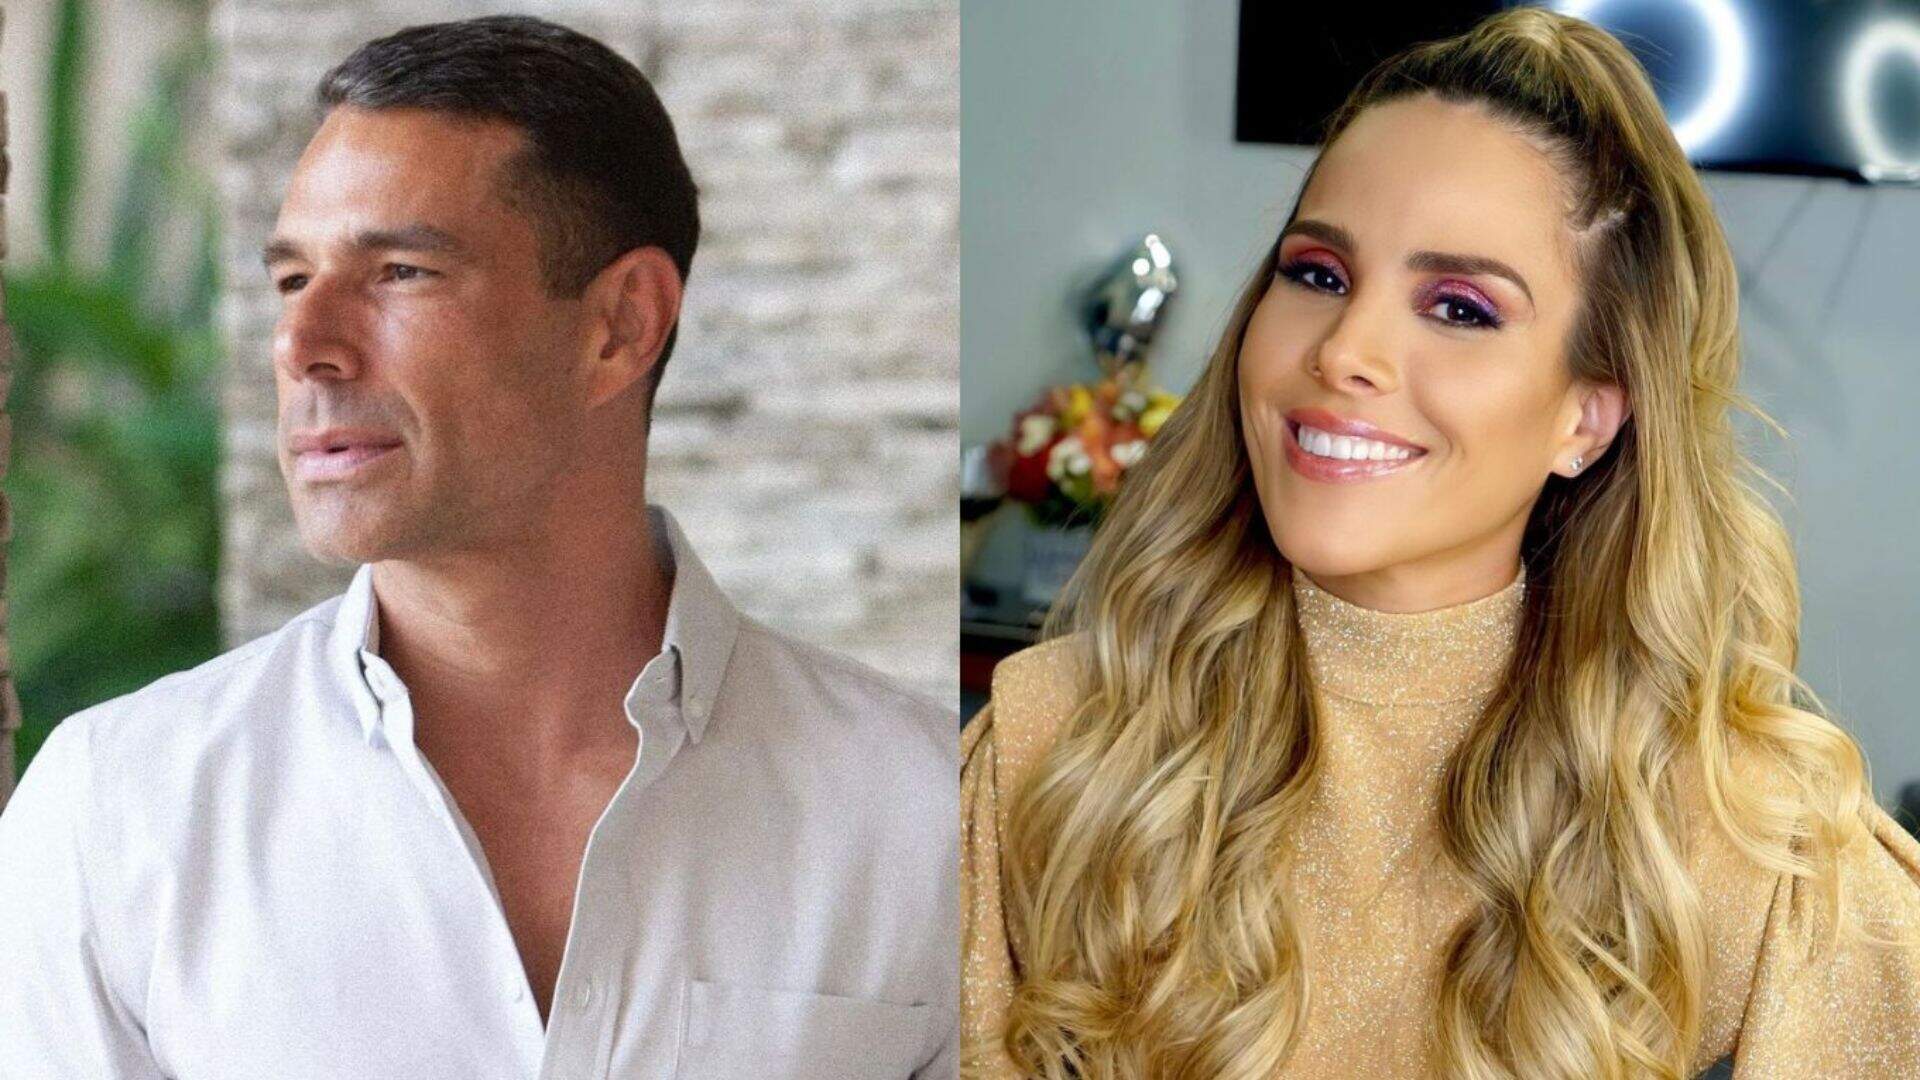 Novos ares? Após divórcio com Wanessa Camargo, Marcus Buaiz quebra silêncio sobre solteirice - Metropolitana FM